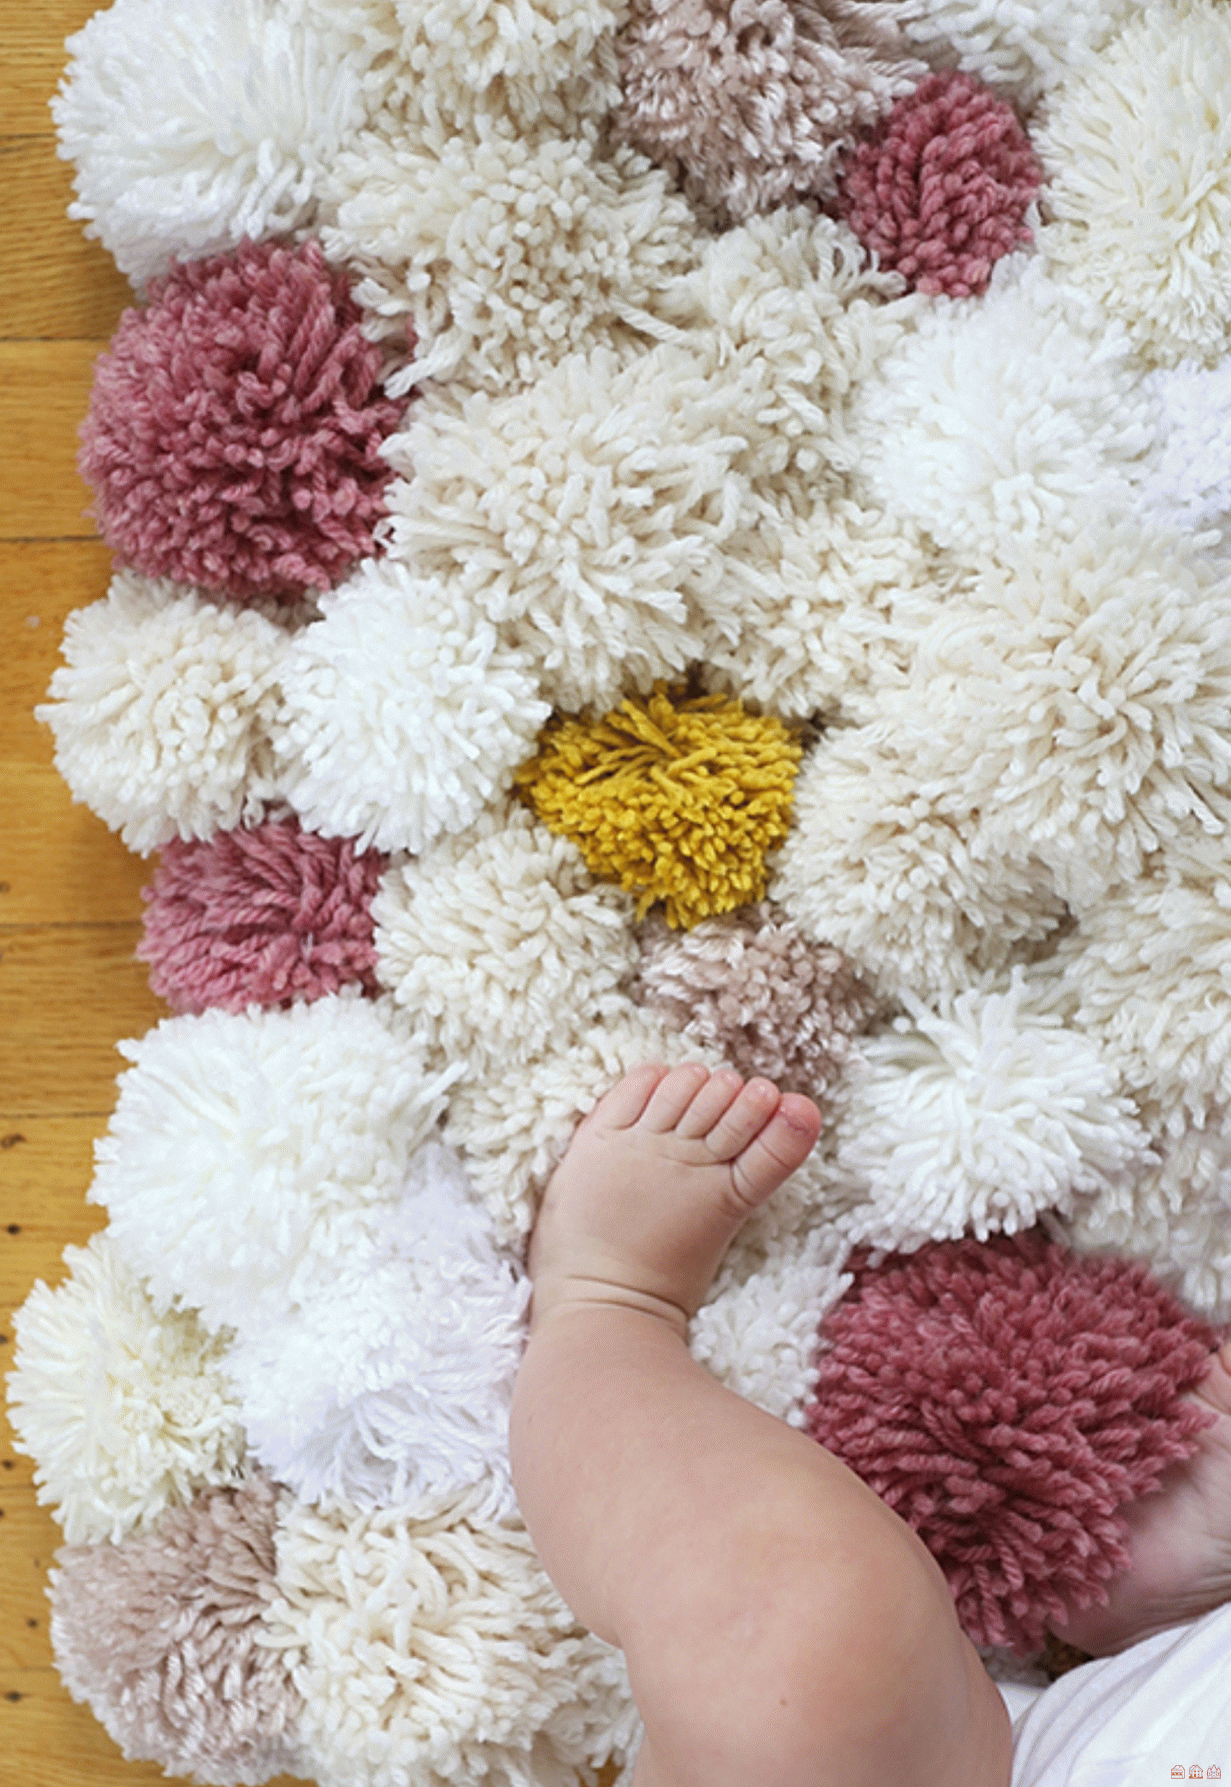 Как сделать ковер из пряжи своими руками: Как сделать напольные коврики: простые мастер-классы - Домоводство